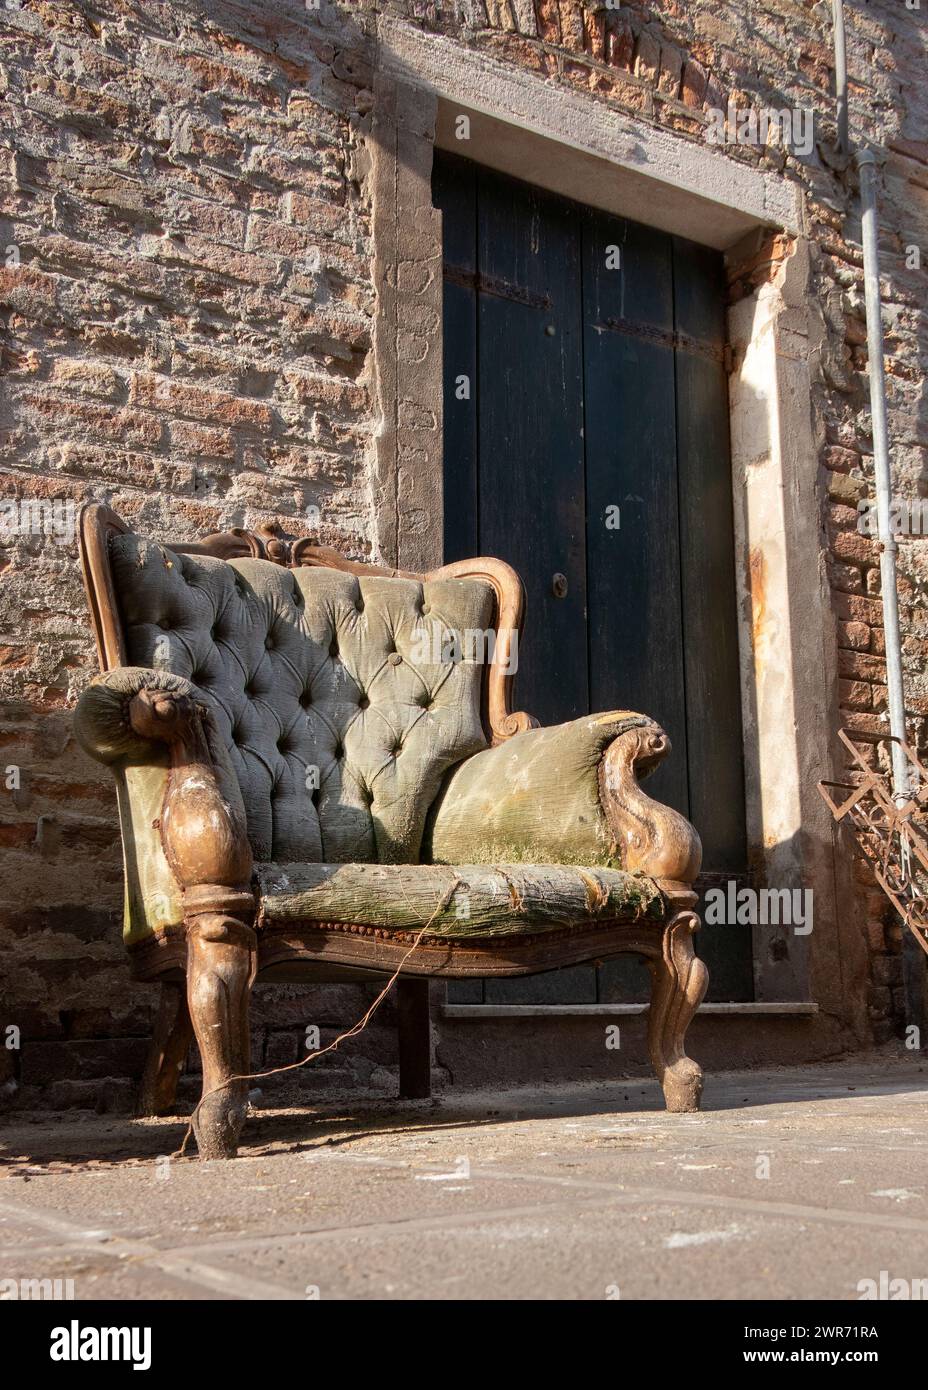 Ancienne chaise verte rembourrée antique vintage délabrée située à l'extérieur d'une porte d'entrée à jeter Chioggia Italie Banque D'Images